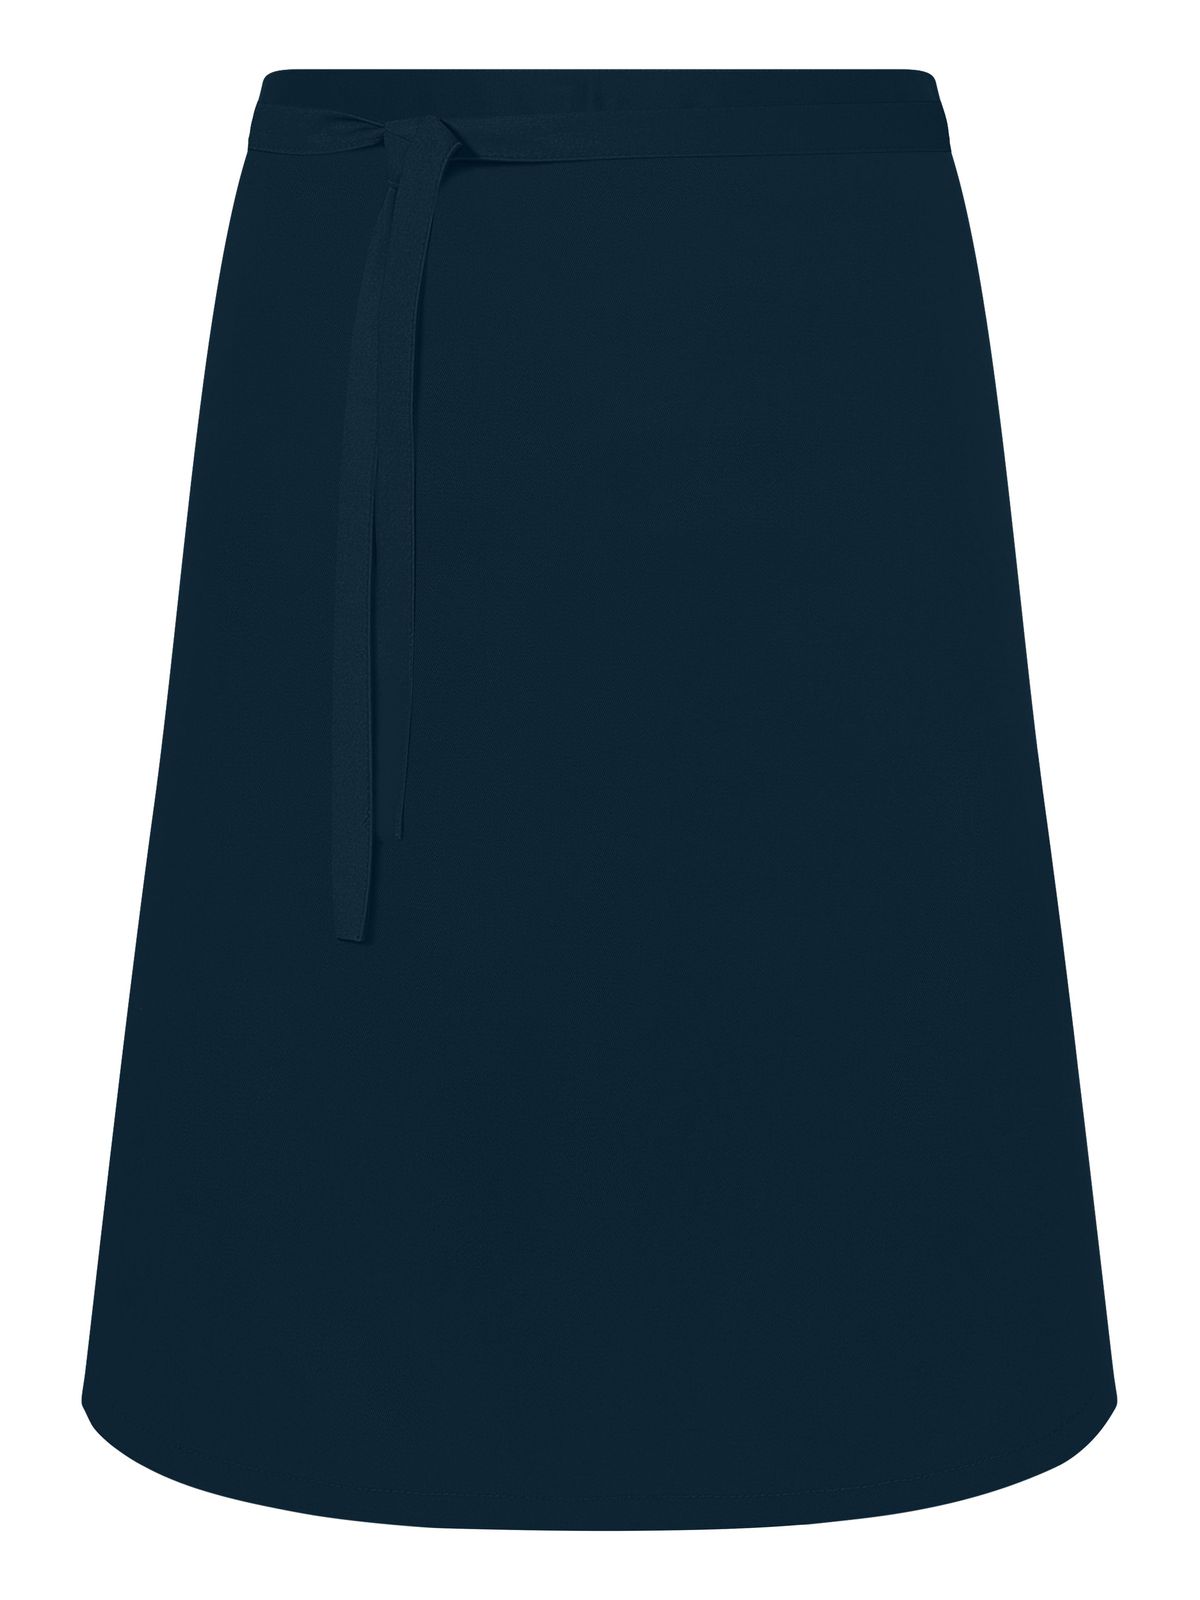 apron-short-navy.webp